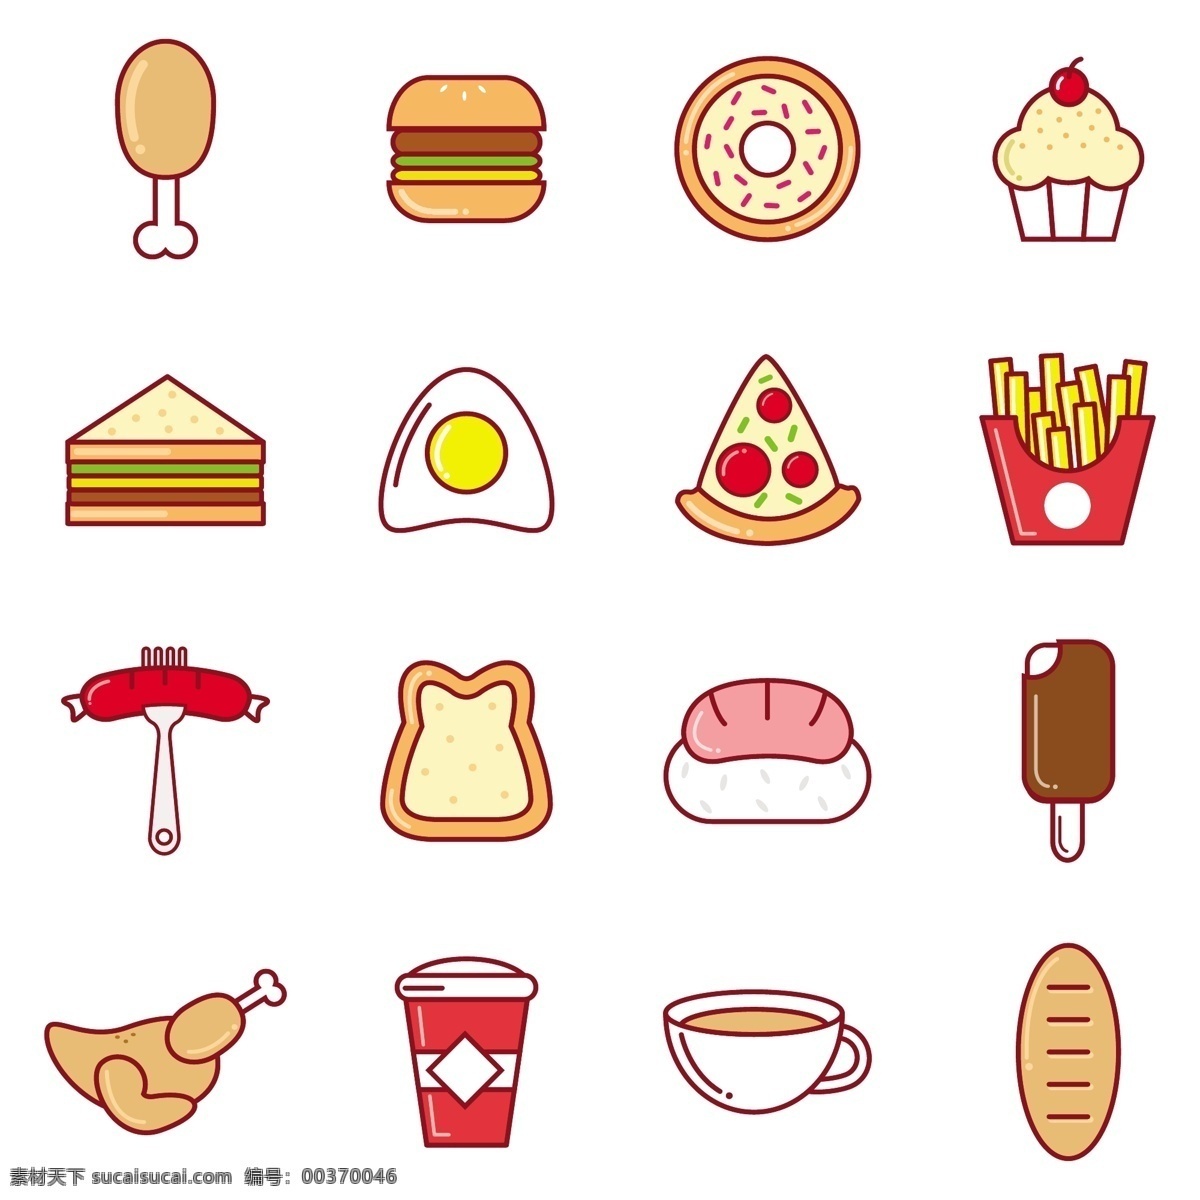 彩色食物图标 食物 咖啡 菜单 图标 餐厅 披萨 纸杯蛋糕 奶油 颜色 鸡肉 面包 寿司 快餐 三明治 鸡蛋 汉堡包